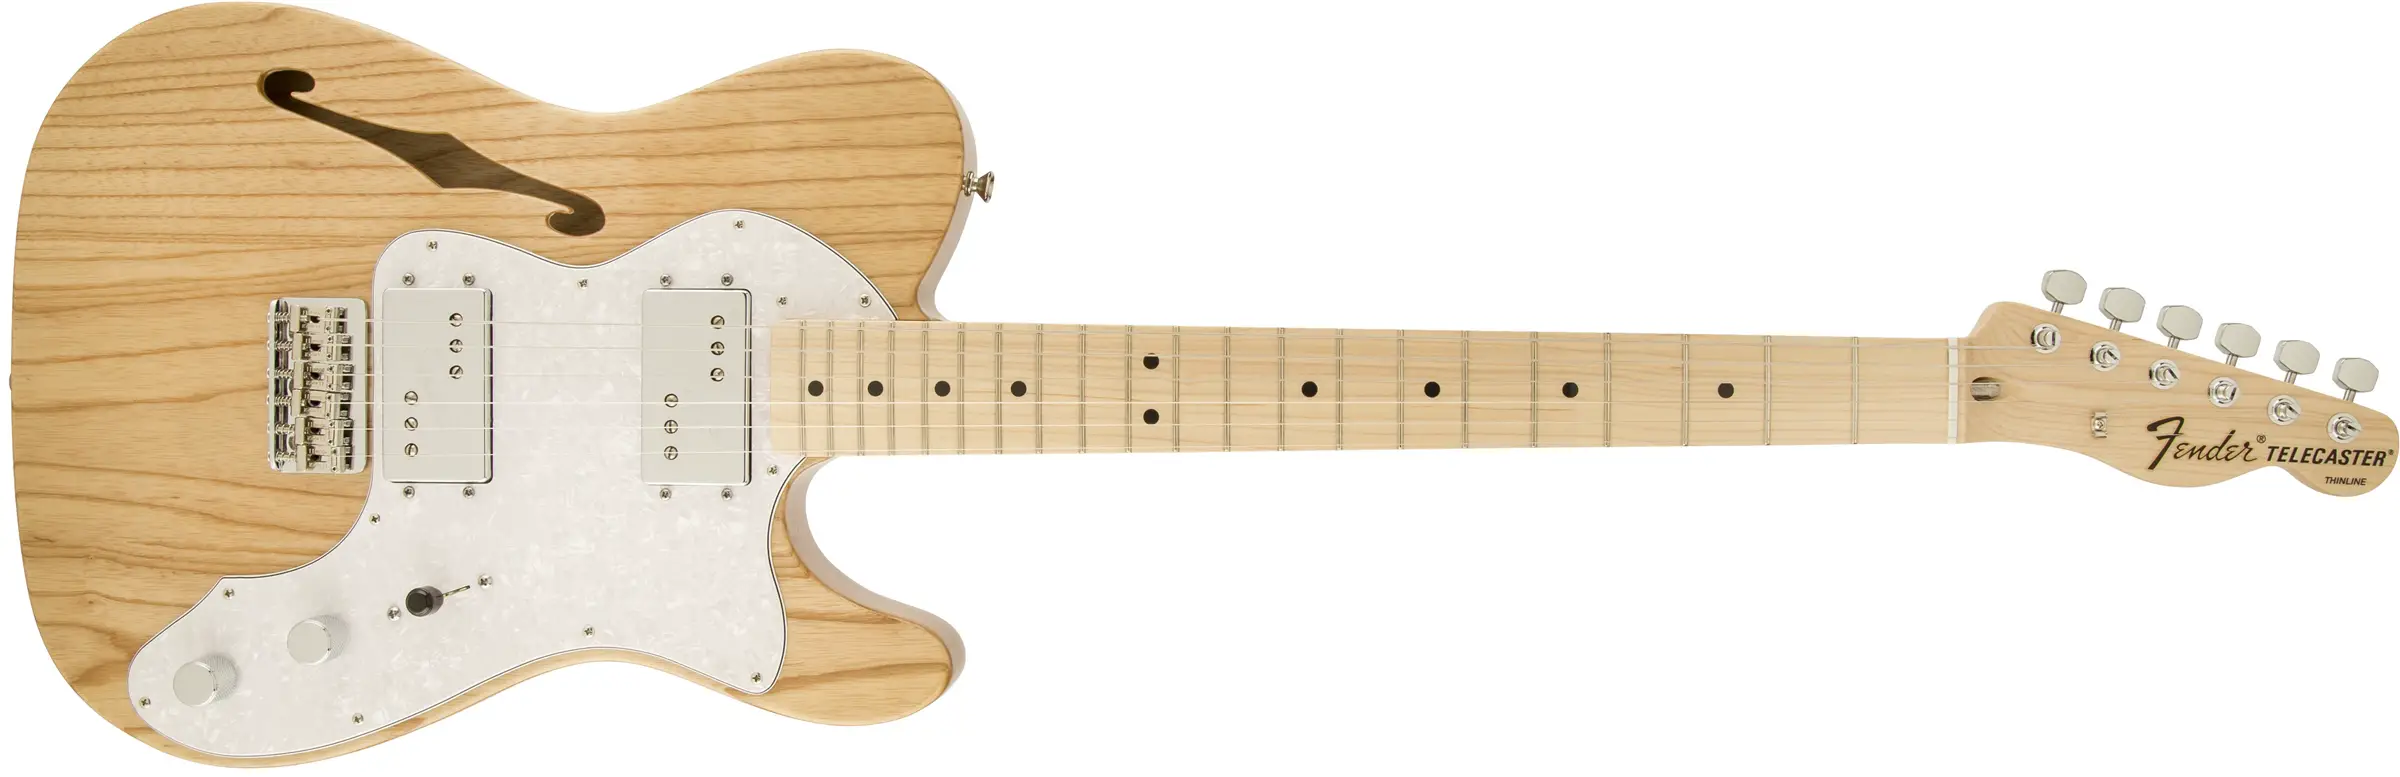 Fender 72 Telecaster Thinline